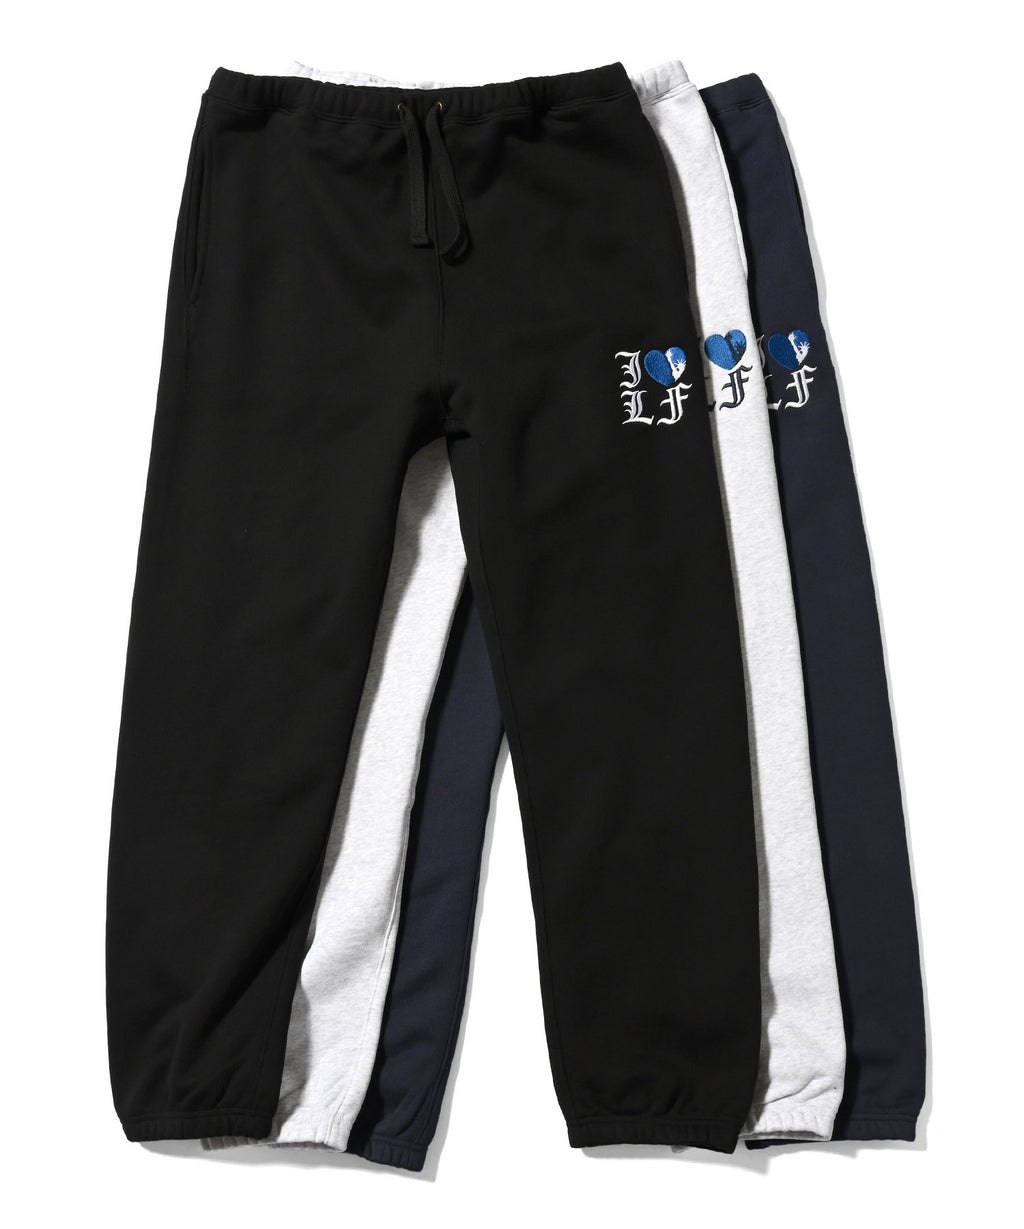 LFYT - 我喜歡 LF 運動褲 LA231206